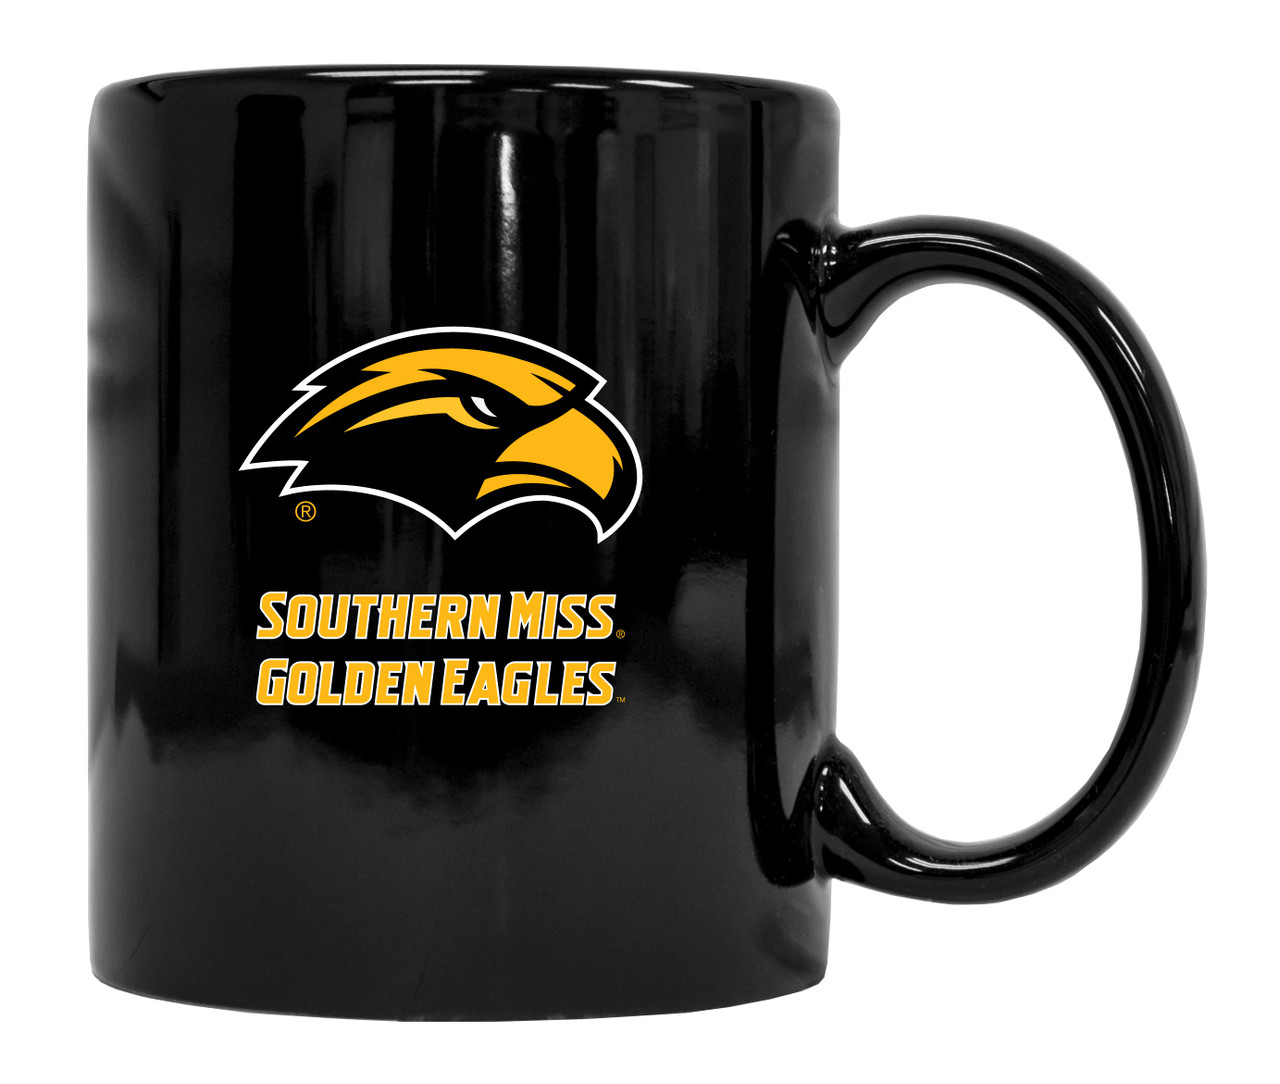 Southern Mississippi Golden Eagles Black Ceramic Mug 2-Pack (Black).